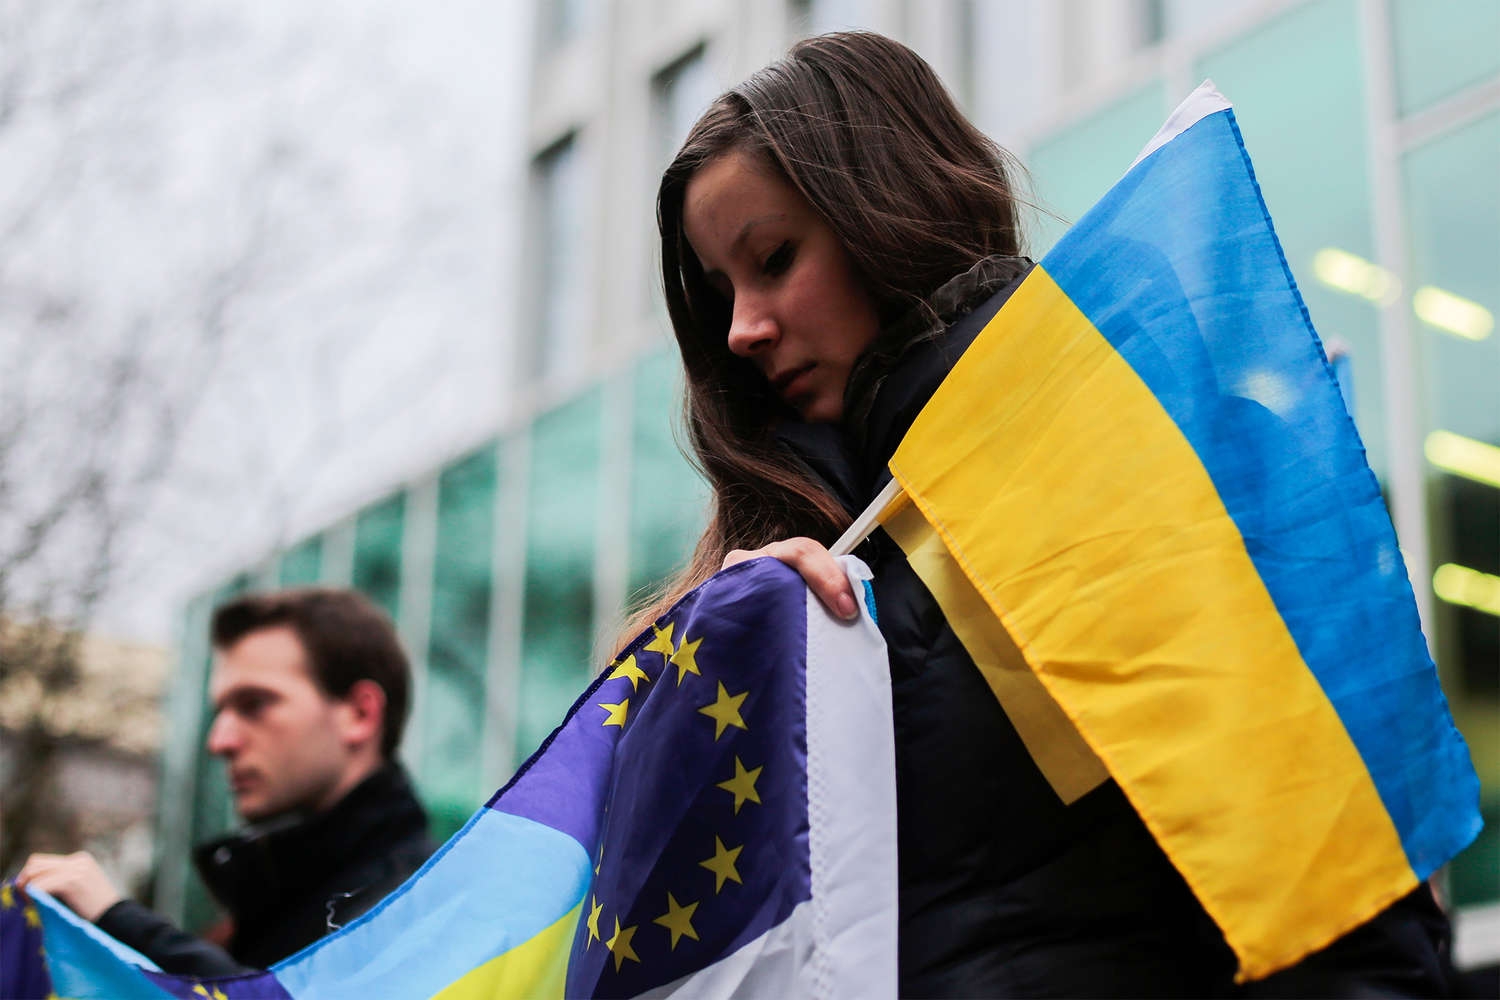 ЕП потребовал от стран ЕС выполнить данные Украине обещания